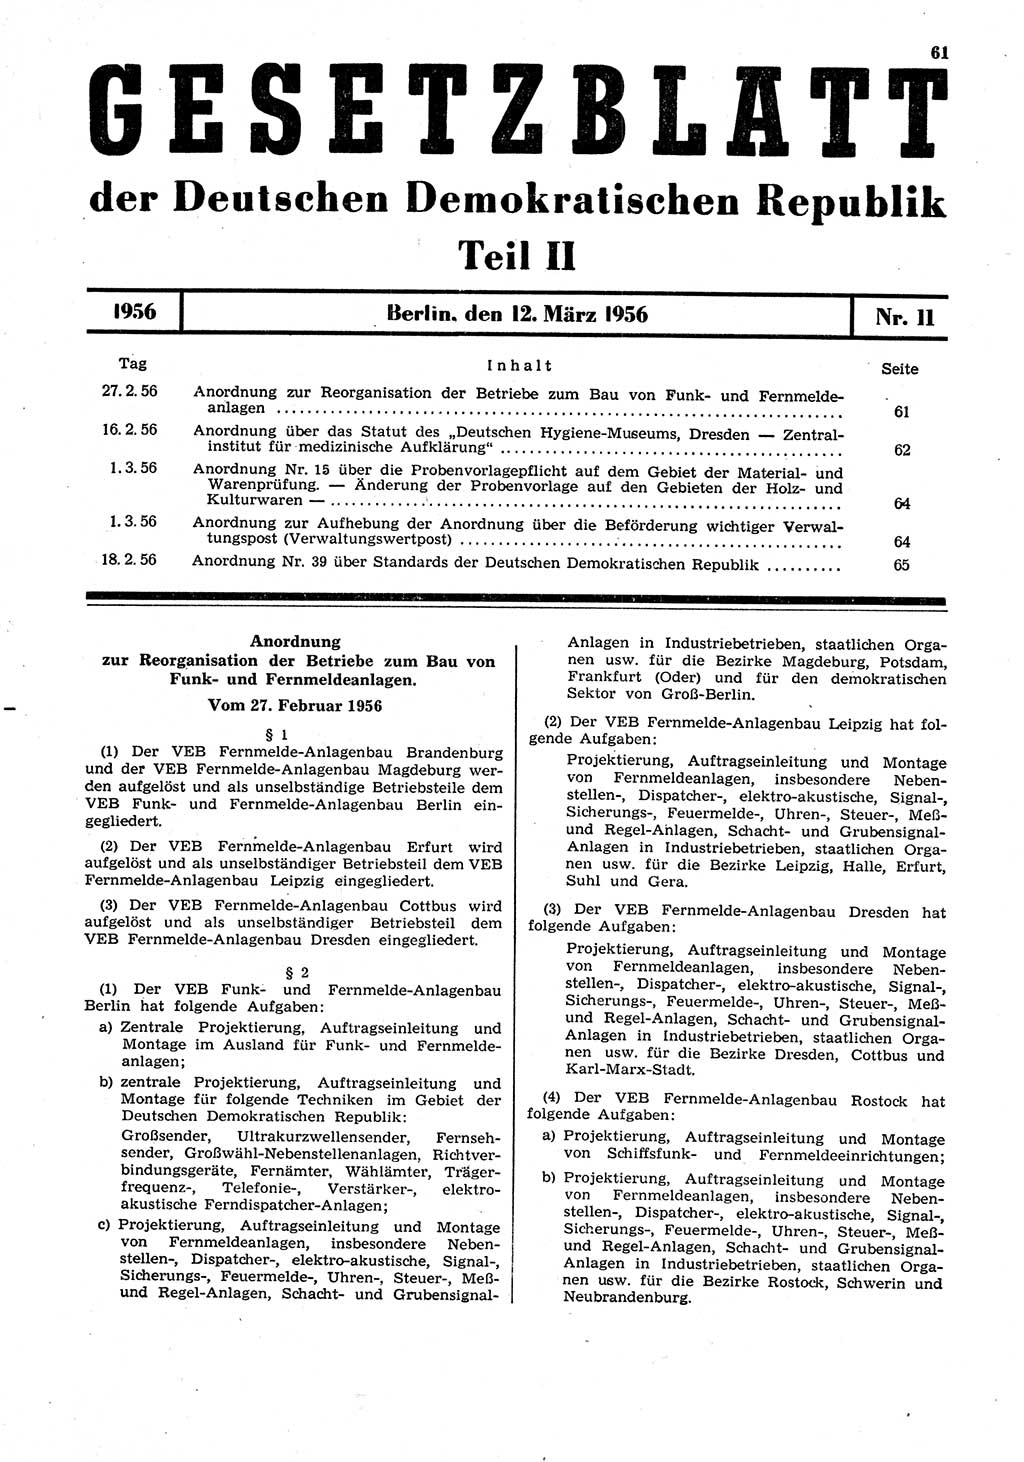 Gesetzblatt (GBl.) der Deutschen Demokratischen Republik (DDR) Teil ⅠⅠ 1956, Seite 61 (GBl. DDR ⅠⅠ 1956, S. 61)